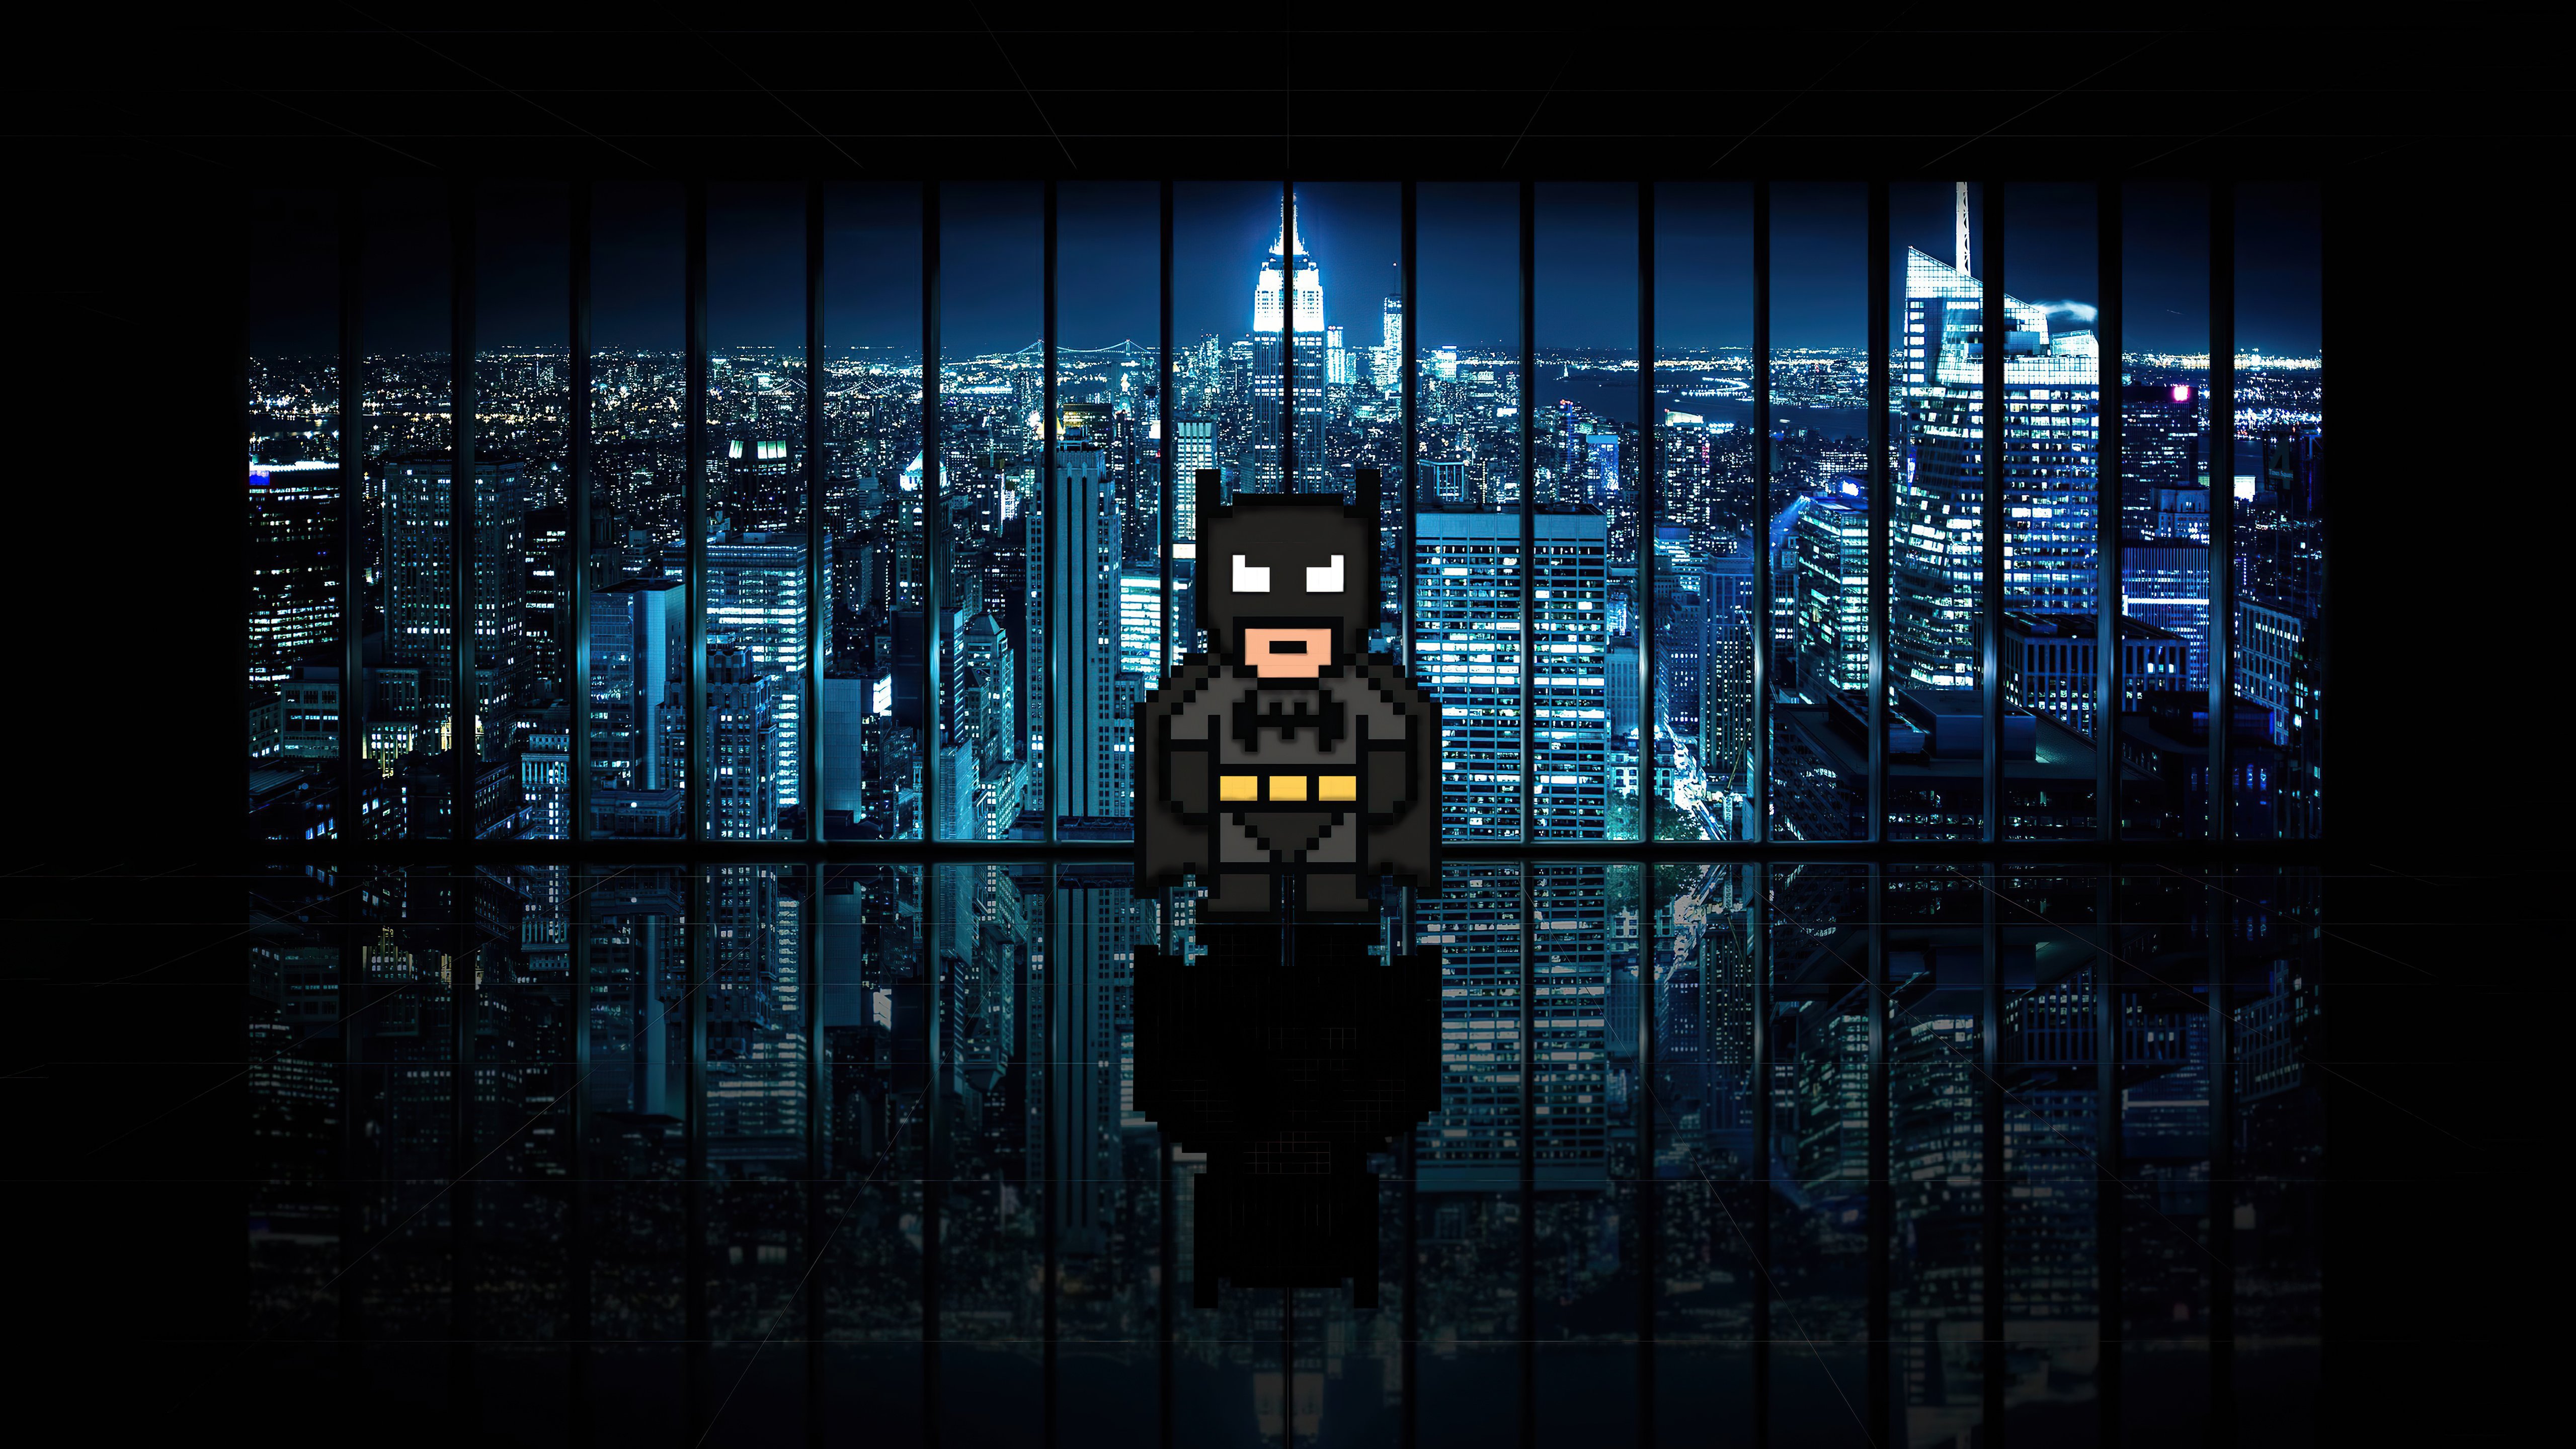 Wallpaper Batman 8 Bits